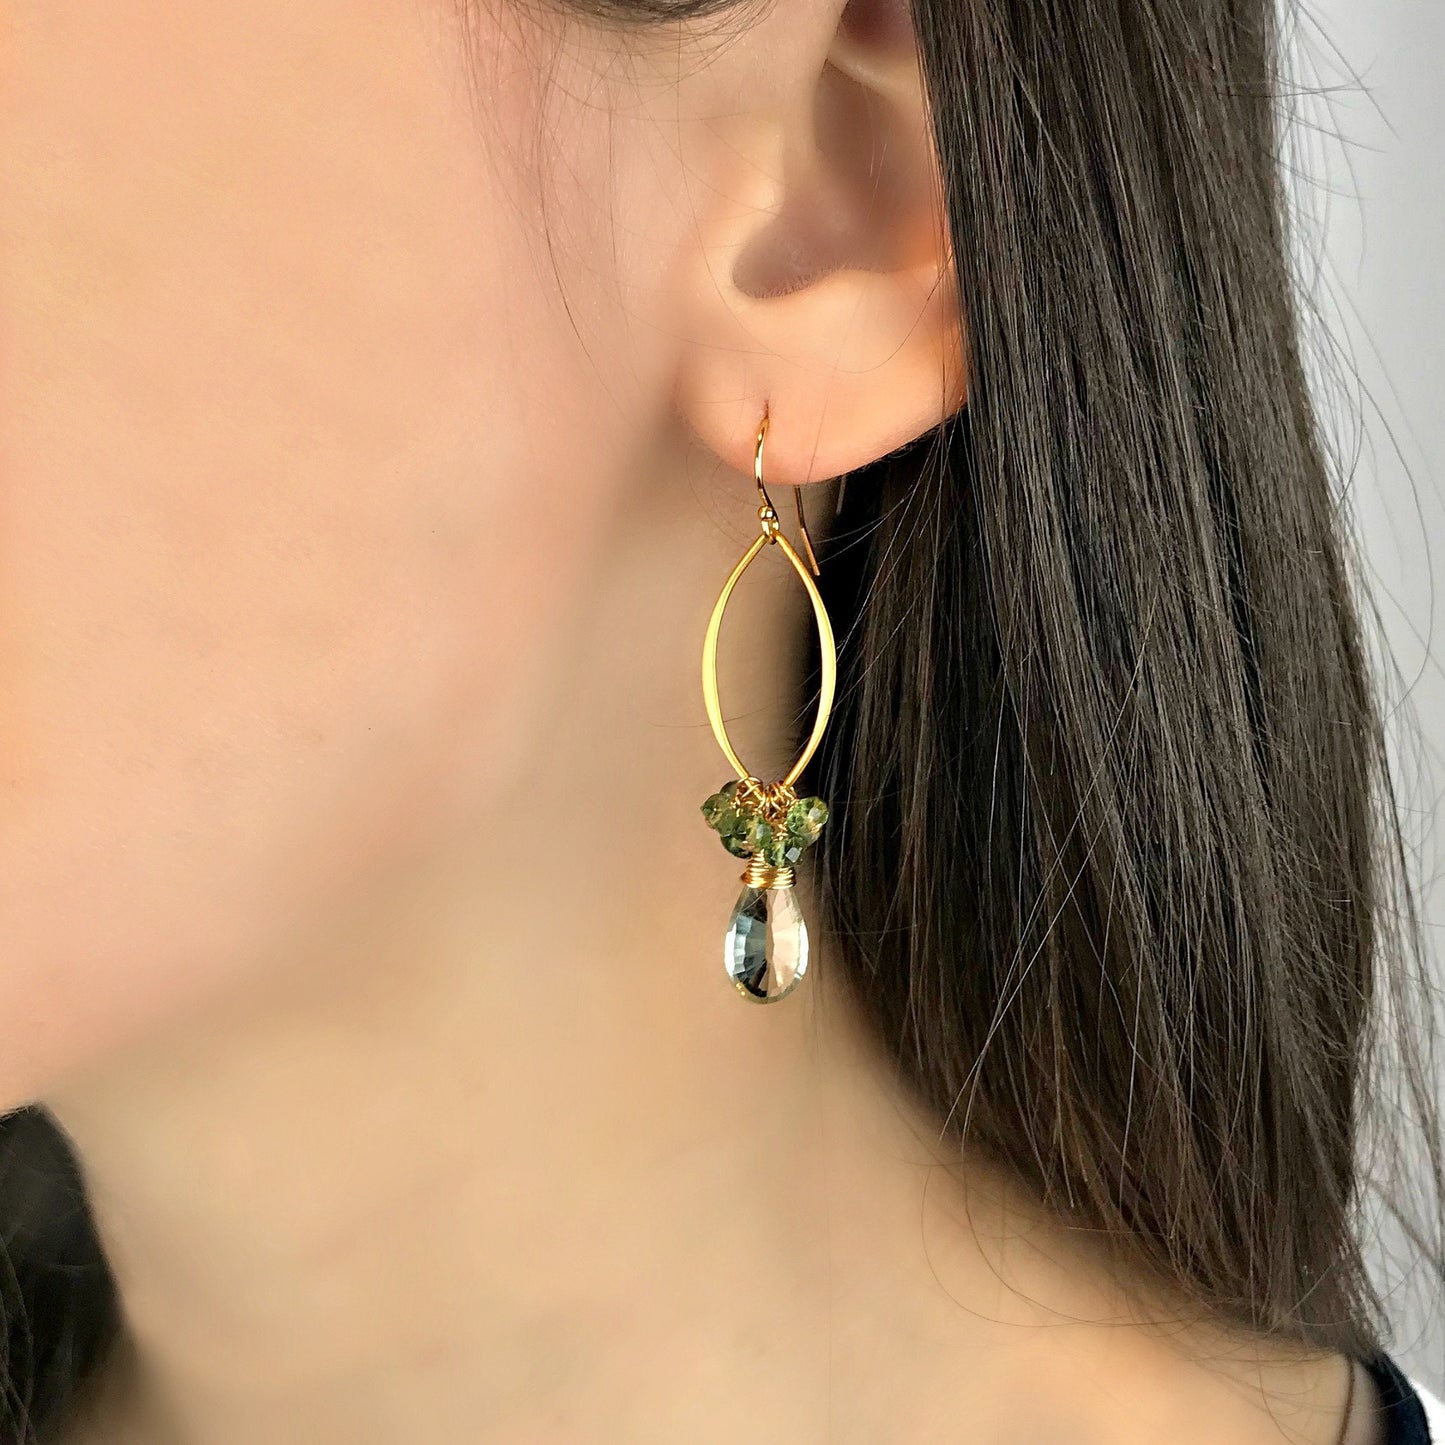 Green Amethyst Drop Earrings Dangle Earrings Green Earrings Bridesmaid Earrings Gemstone Earrings Women Earrings Gift for Her Mother's Day